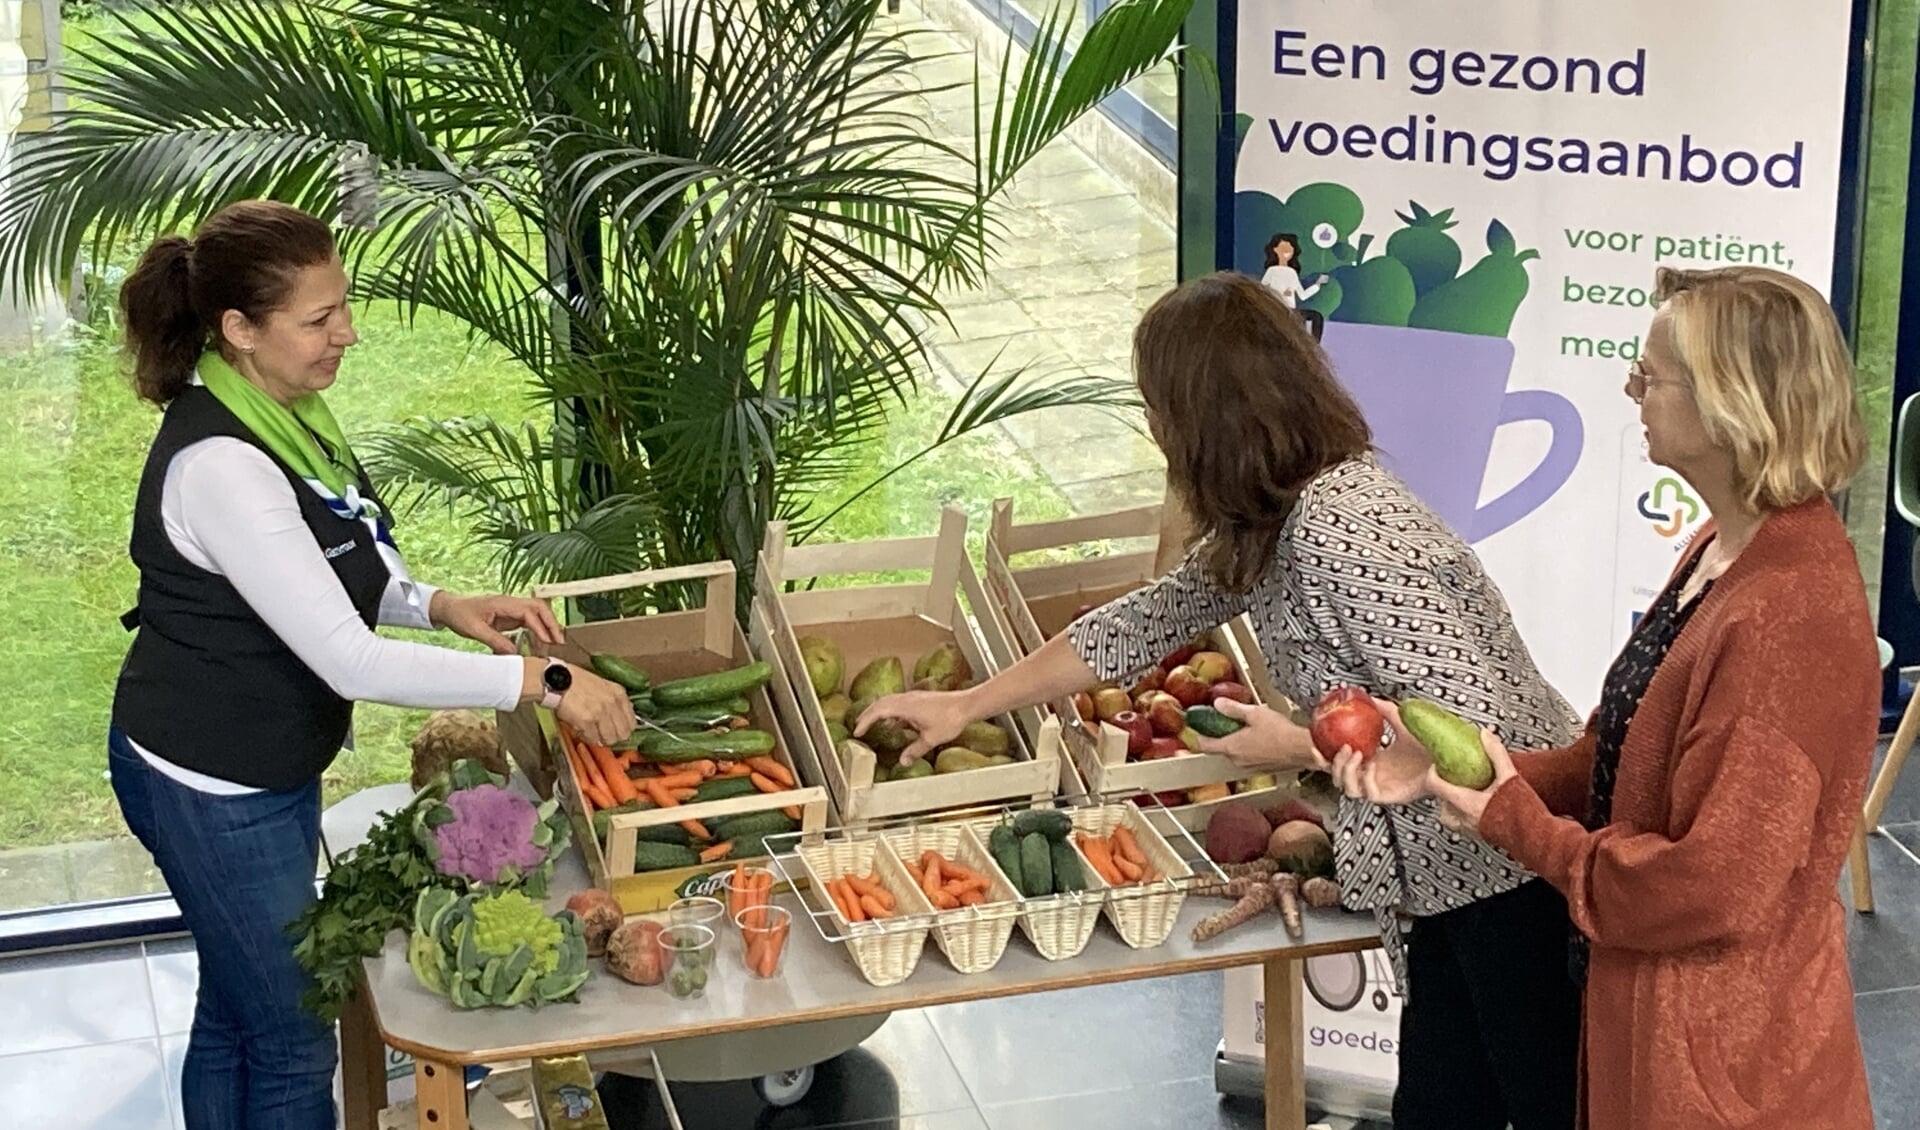 Een gastvrouw van het Dijklander Ziekenhuis in Purmerend deelt groente en fruit uit aan patiënten en medewerkers.